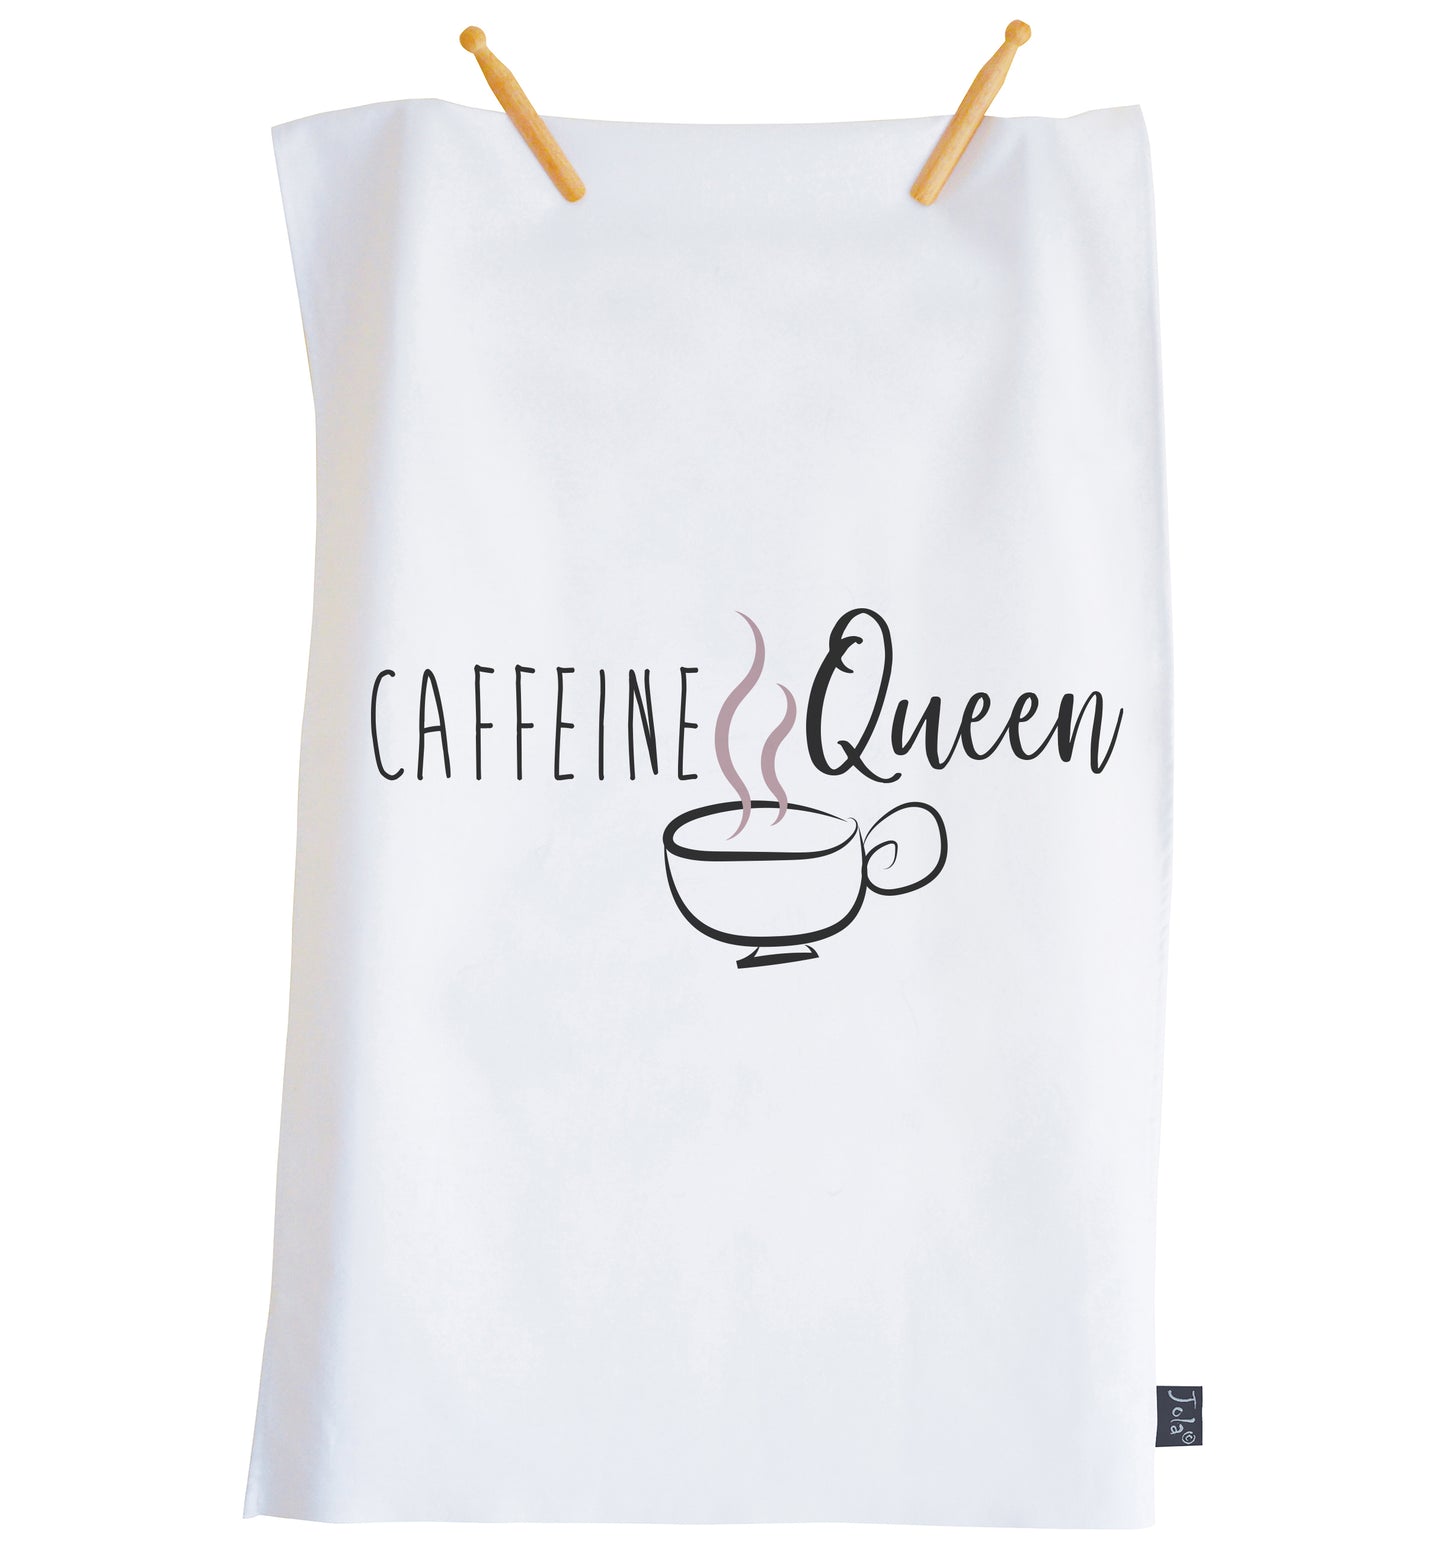 Caffeine Queen Tea towel